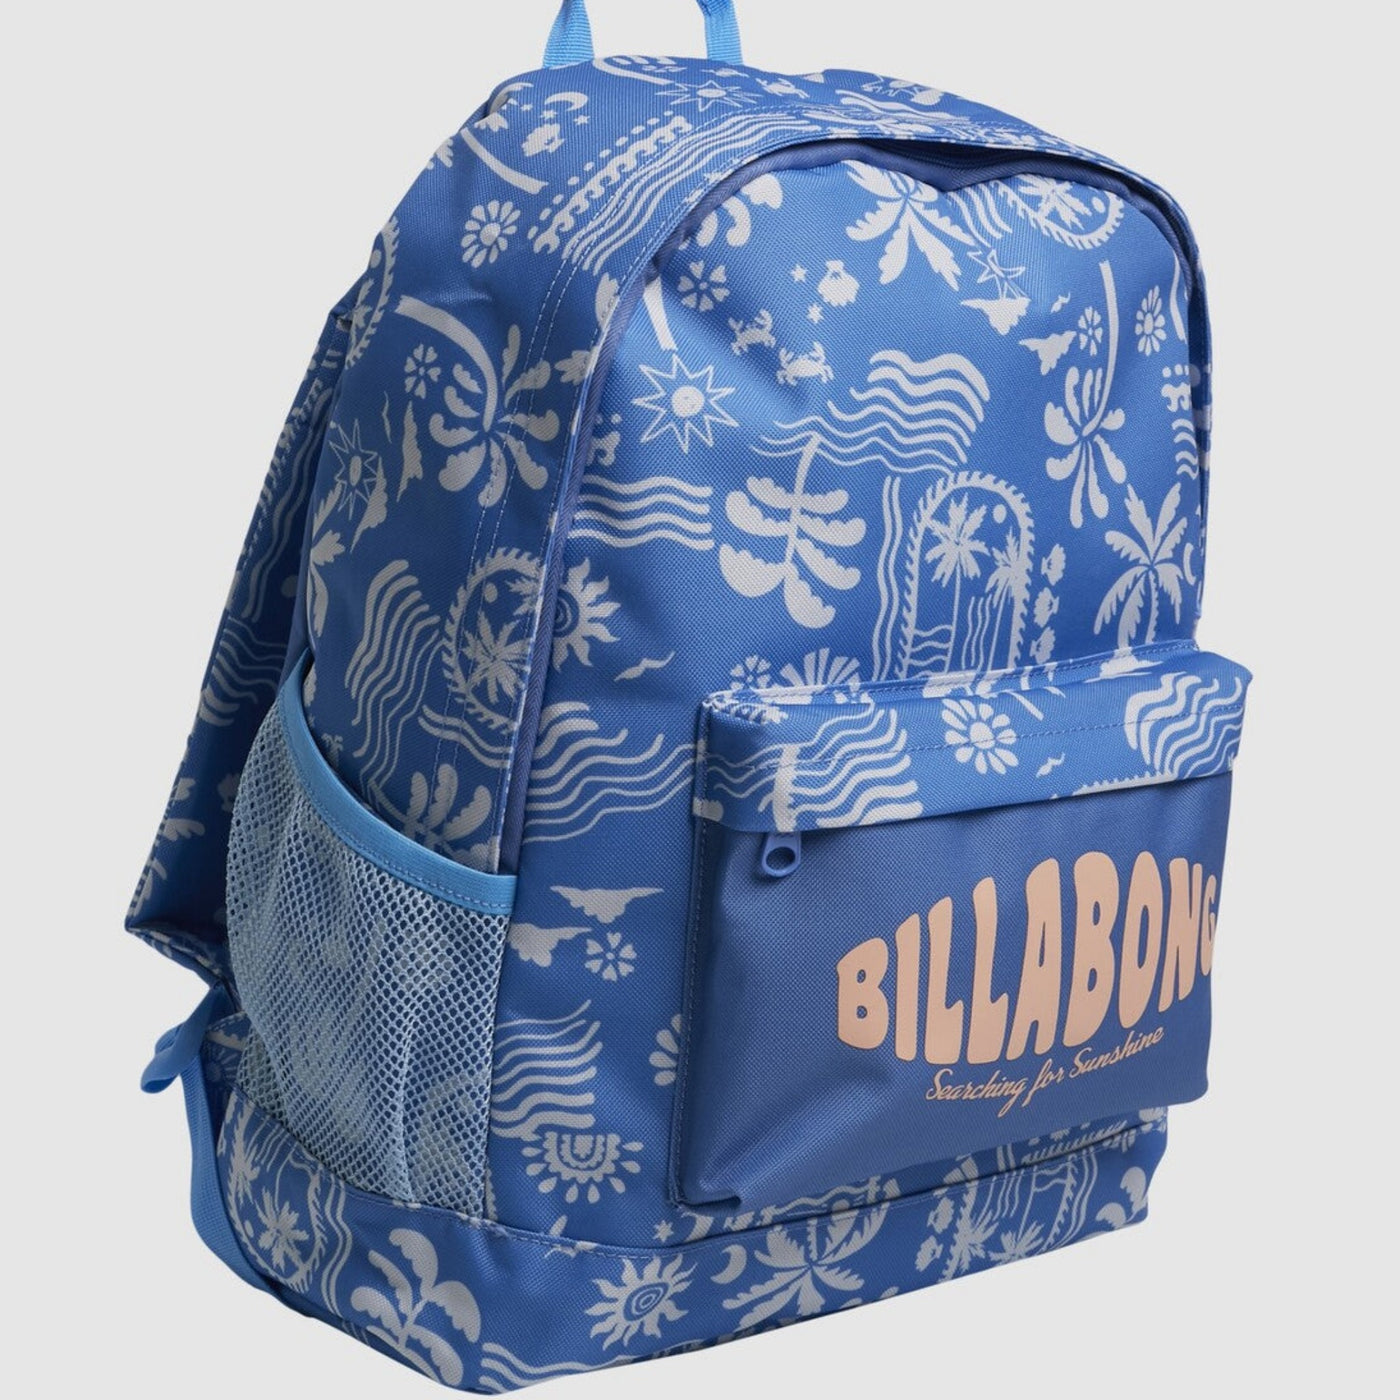 Billabong Island Sun Tiki 25L Backpack - Blue